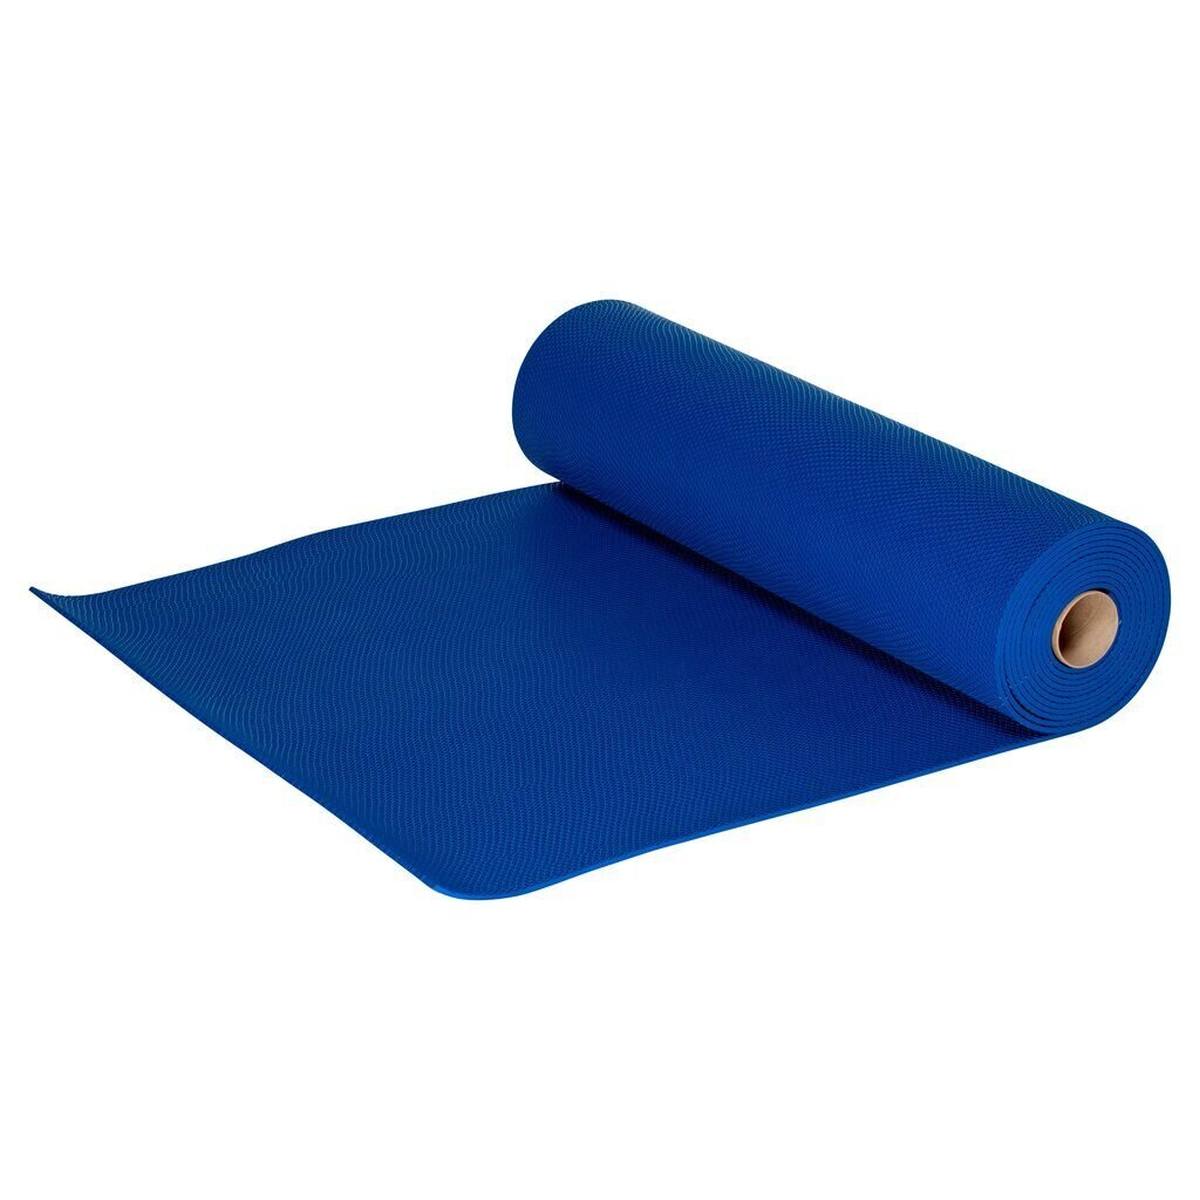 3M Safety-Walk natte zone vloer 3200, blauw, 914 mm x 6 m